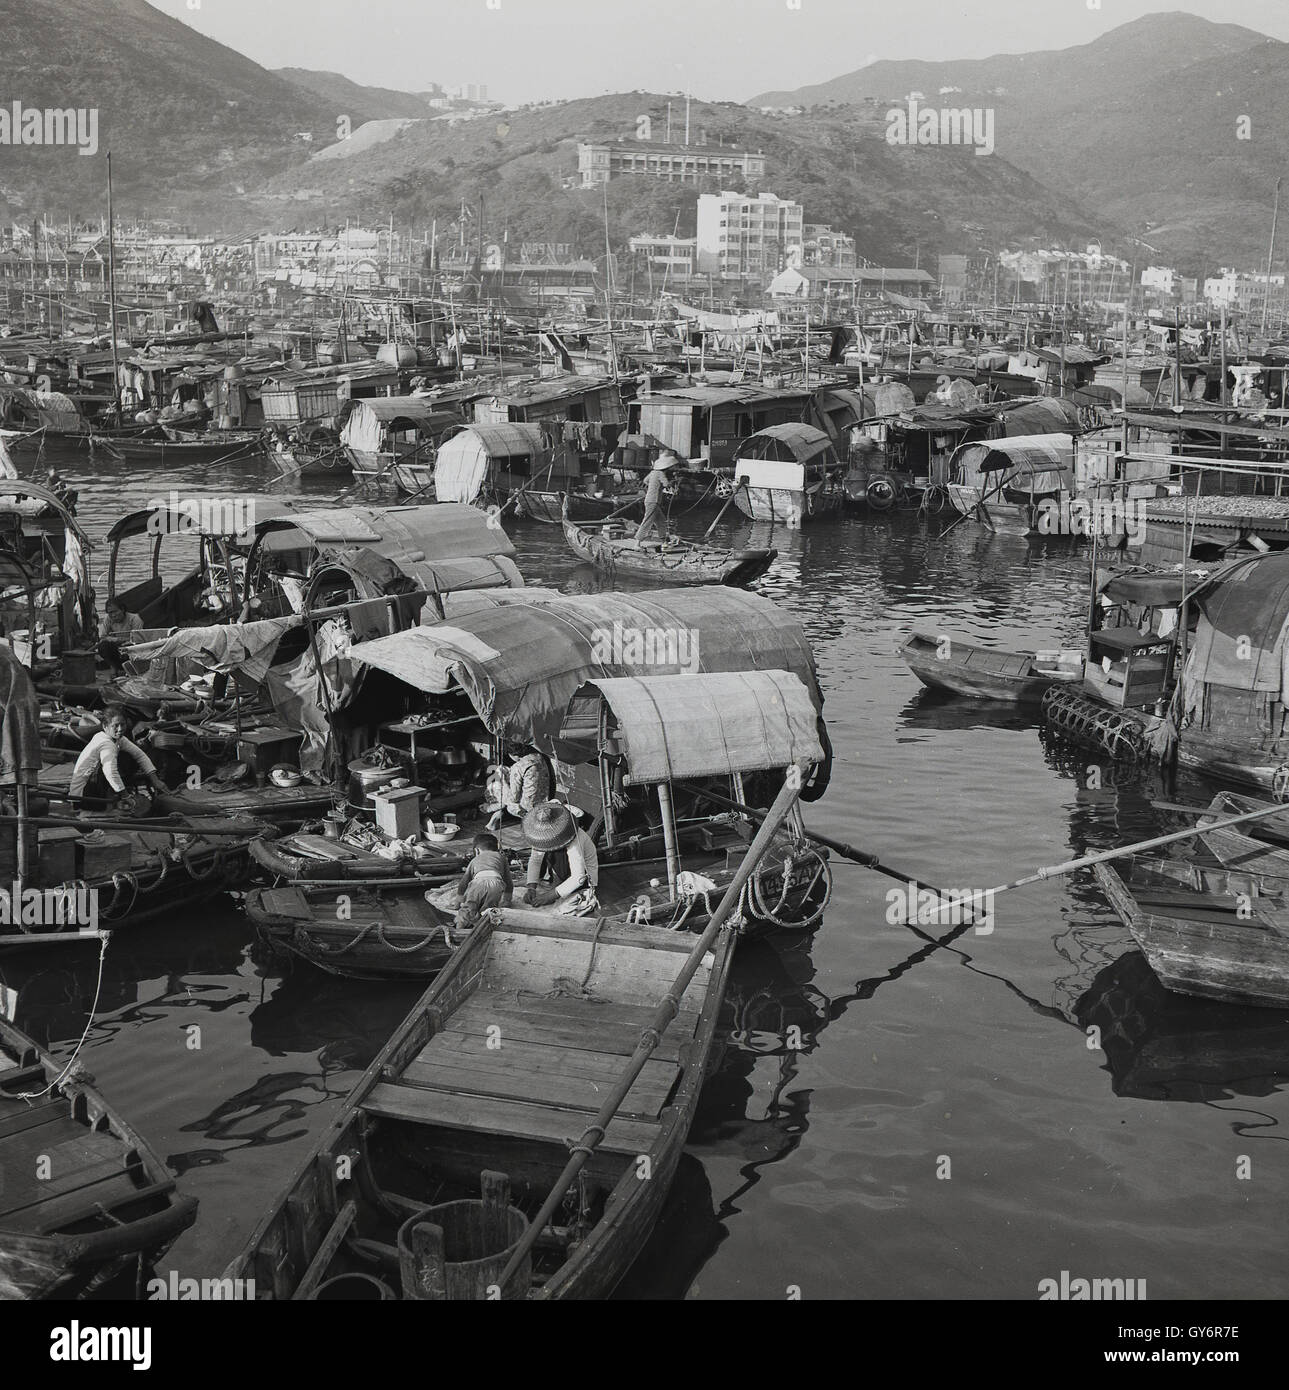 Années 1950, historique, une vue de cette époque du village flottant d'Aberdeen, Hong Kong, sur l'île de Hong Kong, traditionnellement un lieu d'abri pour les pêcheurs locaux.Historiquement, beaucoup d'entre eux vivaient sur leurs bateaux de pêche connus sous le nom de junks et sont devenus les 'personnes vivant sur l'eau'.Les gens de Hong Kong ont continué à vivre dans le village flottant d'Aberdeen pendant les années 1960 et 1970. Banque D'Images